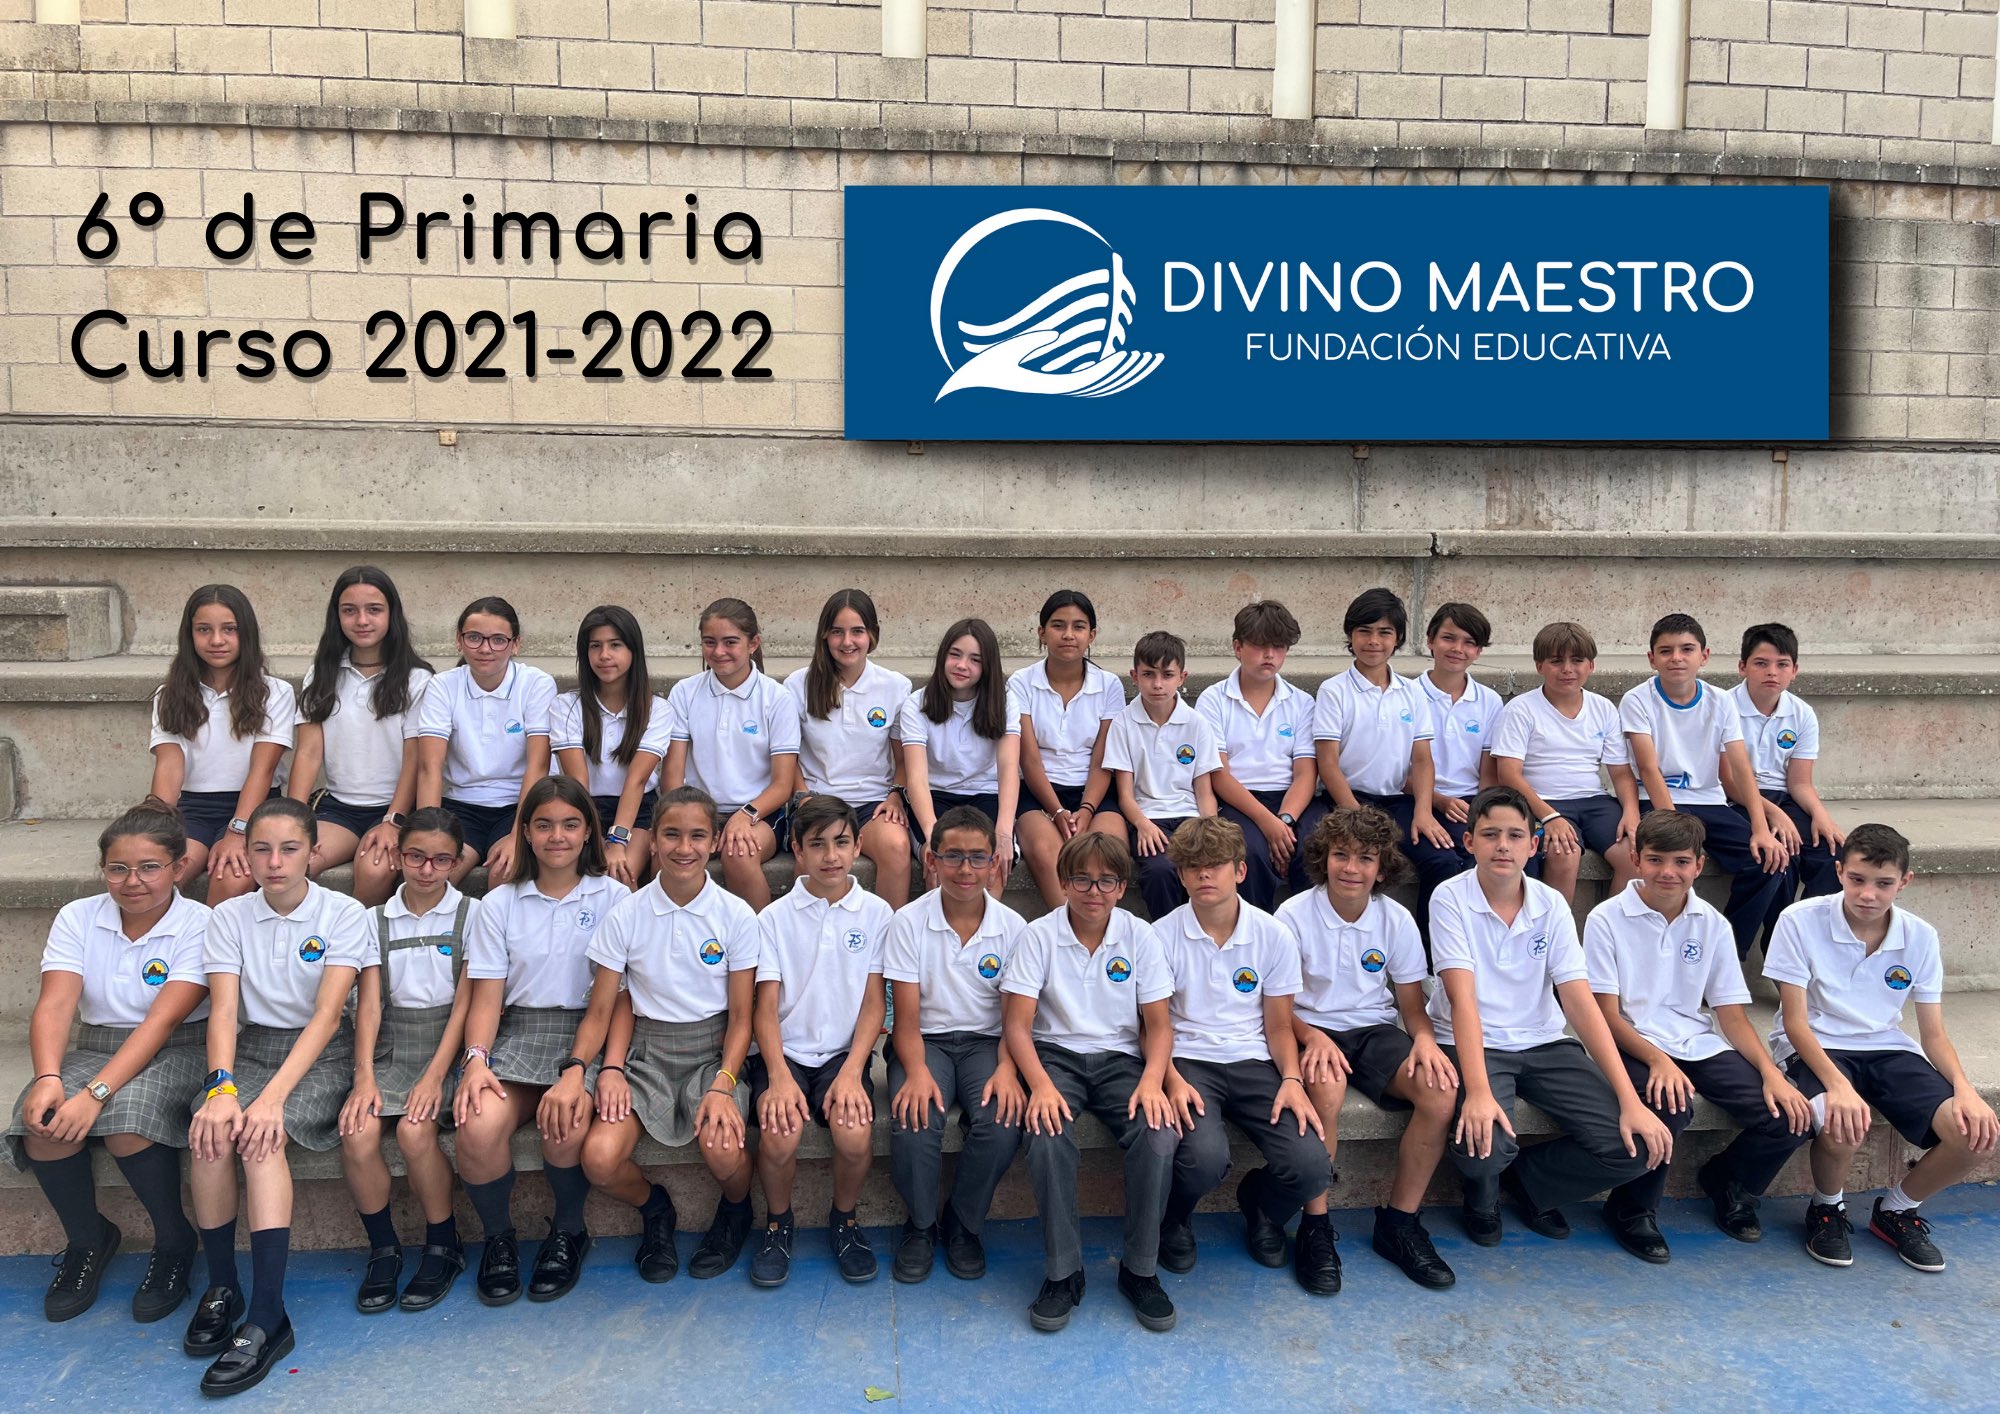 Divino Maestro Salamanca on Twitter: los alumnos de 6º de Primaria han celebrado su fiesta fin de etapa. Les esperamos en Secundaria con los brazos bien abiertos. https://t.co/WGjv44eyAg" / Twitter